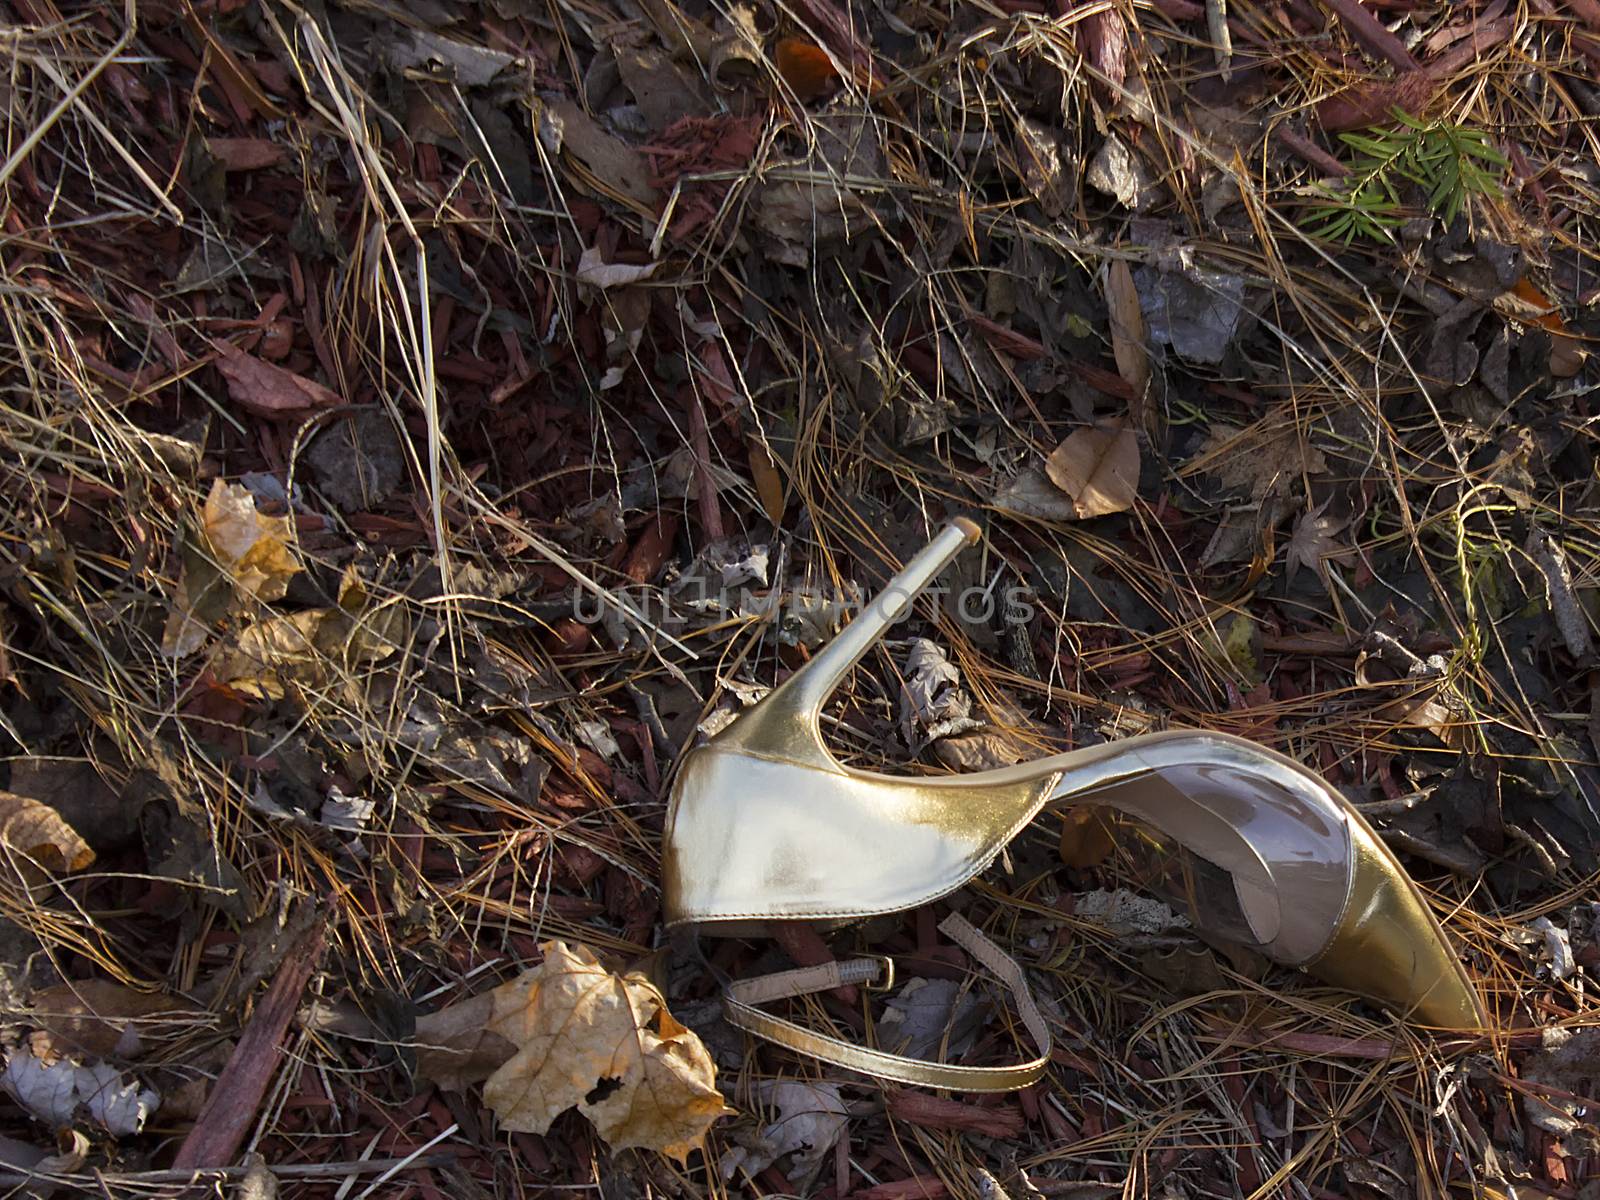 Lost golden shoe by roadside